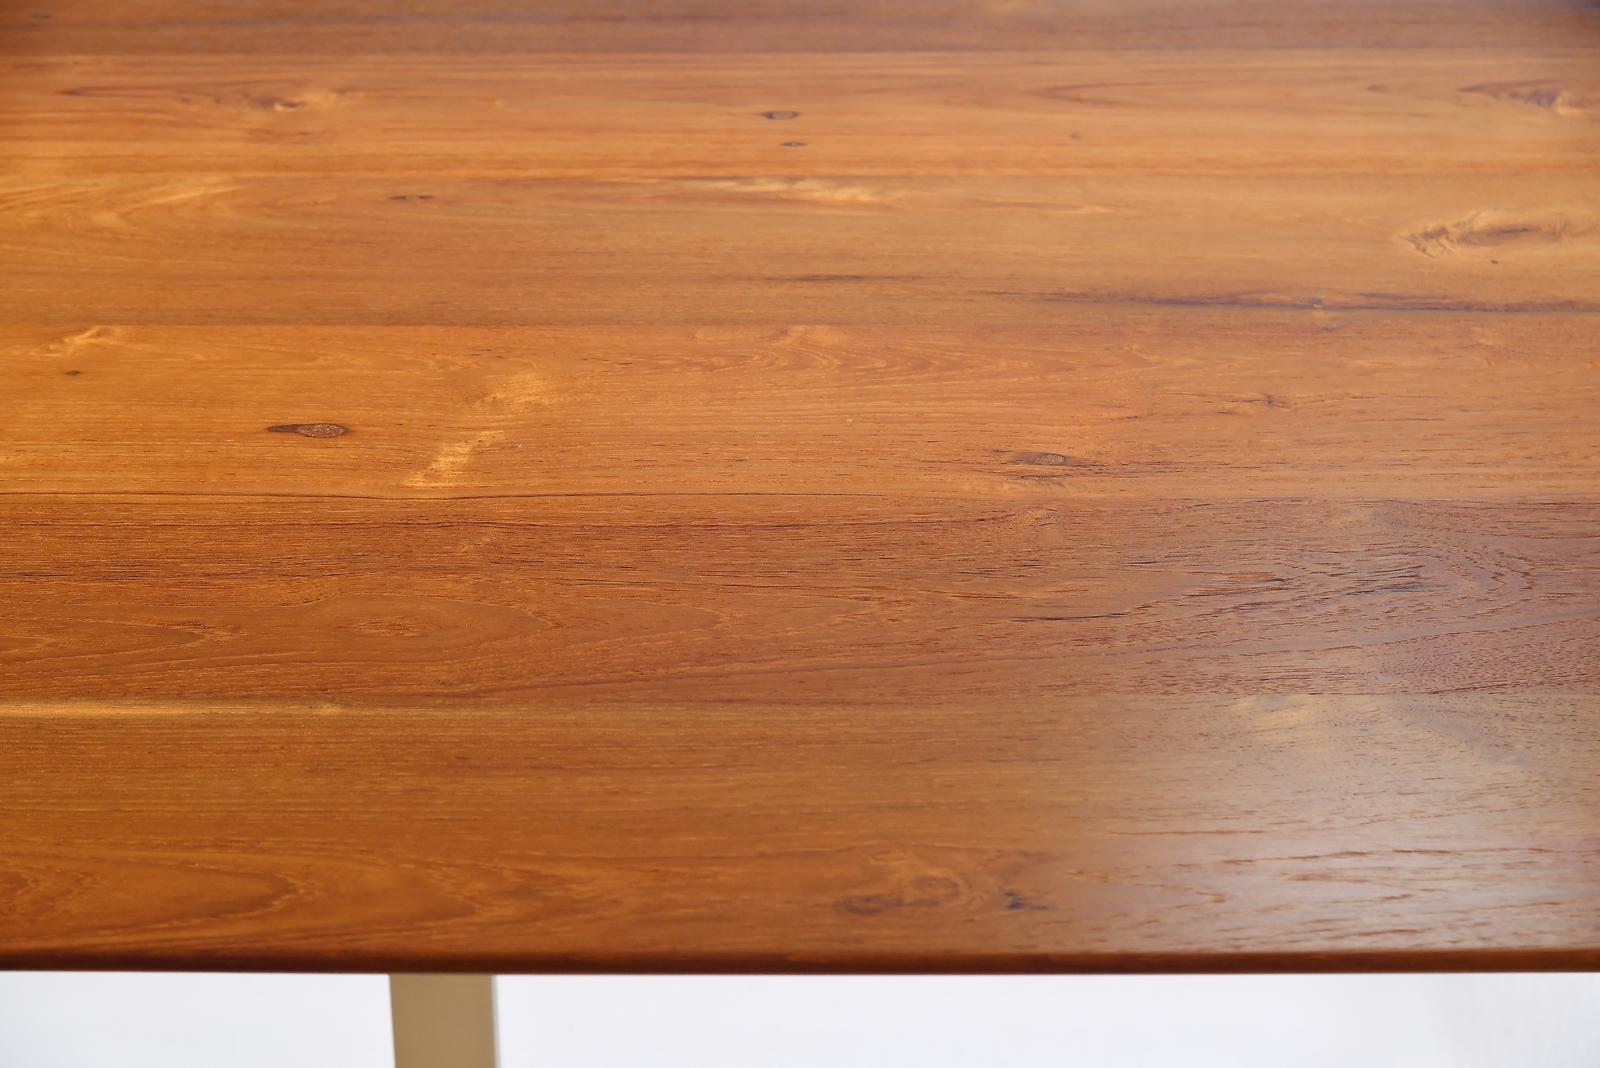 Bespoke Desk, Reclaimed Wood, Sand Cast Brass Base, by P. Tendercool For Sale 1